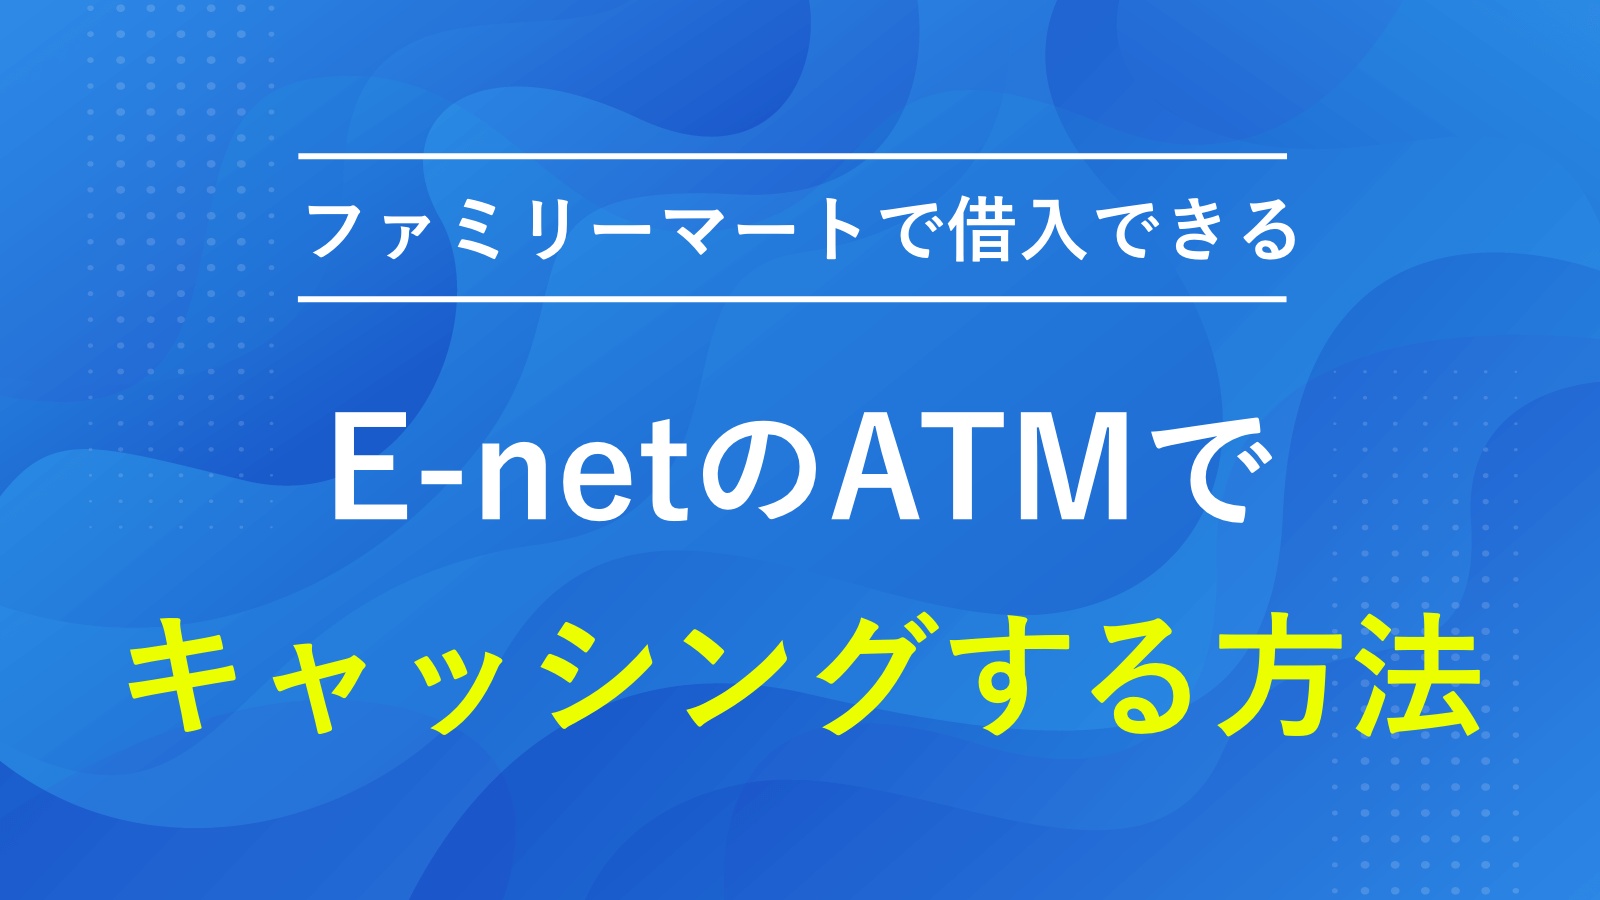 ファミリーマートなどにあるATM「E-net」でキャッシングする方法と手順